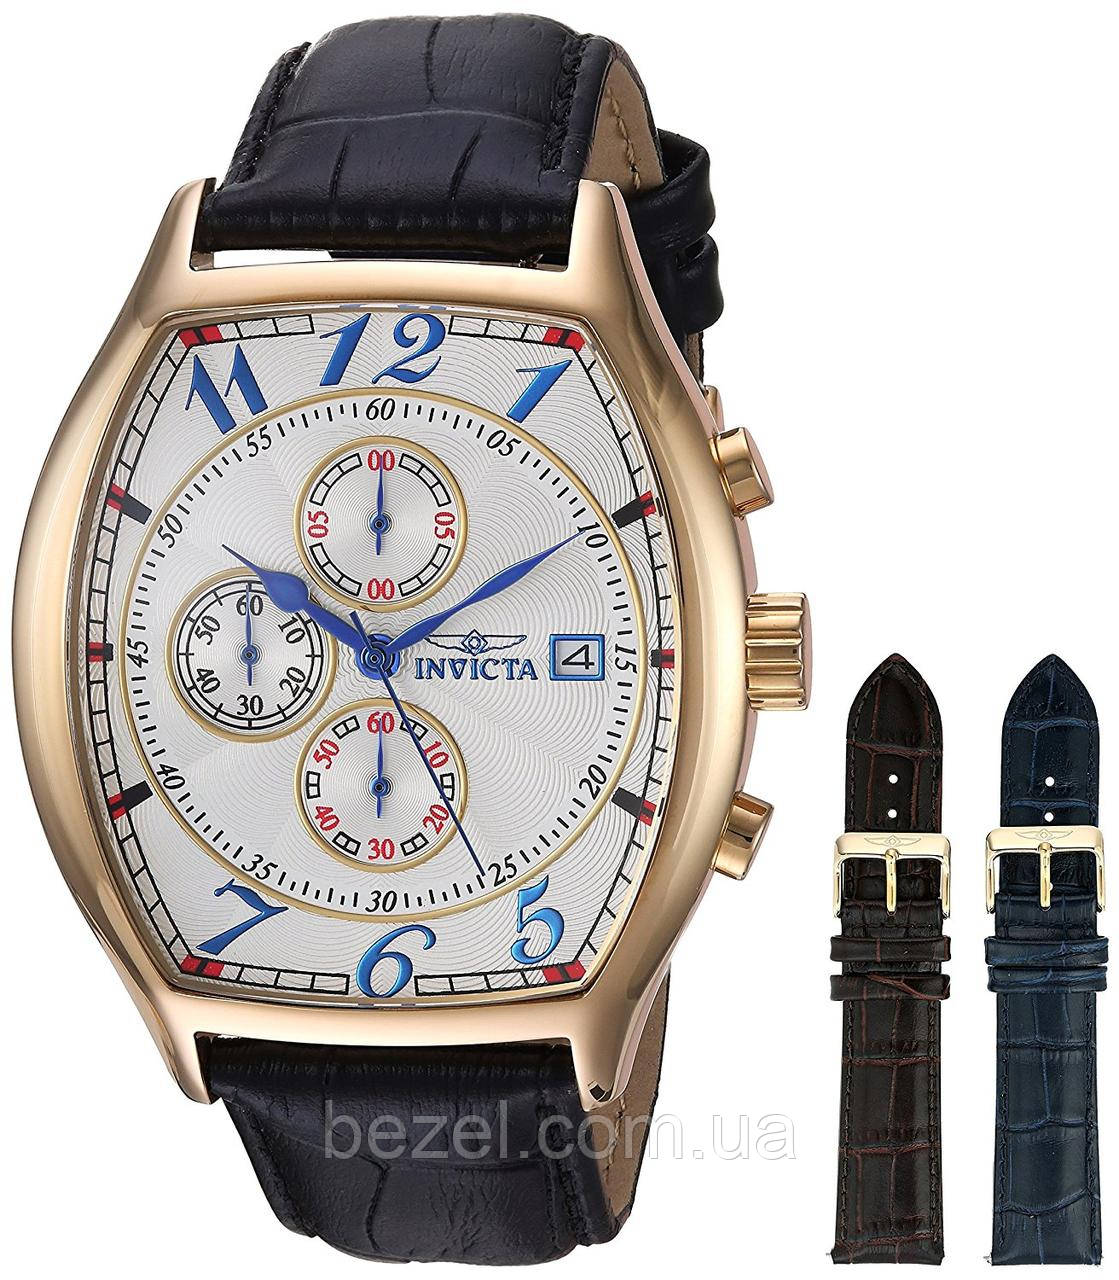 Чоловічий годинник Invicta 14330 Special Edition Інвікта швейцарський кварцовий годинник